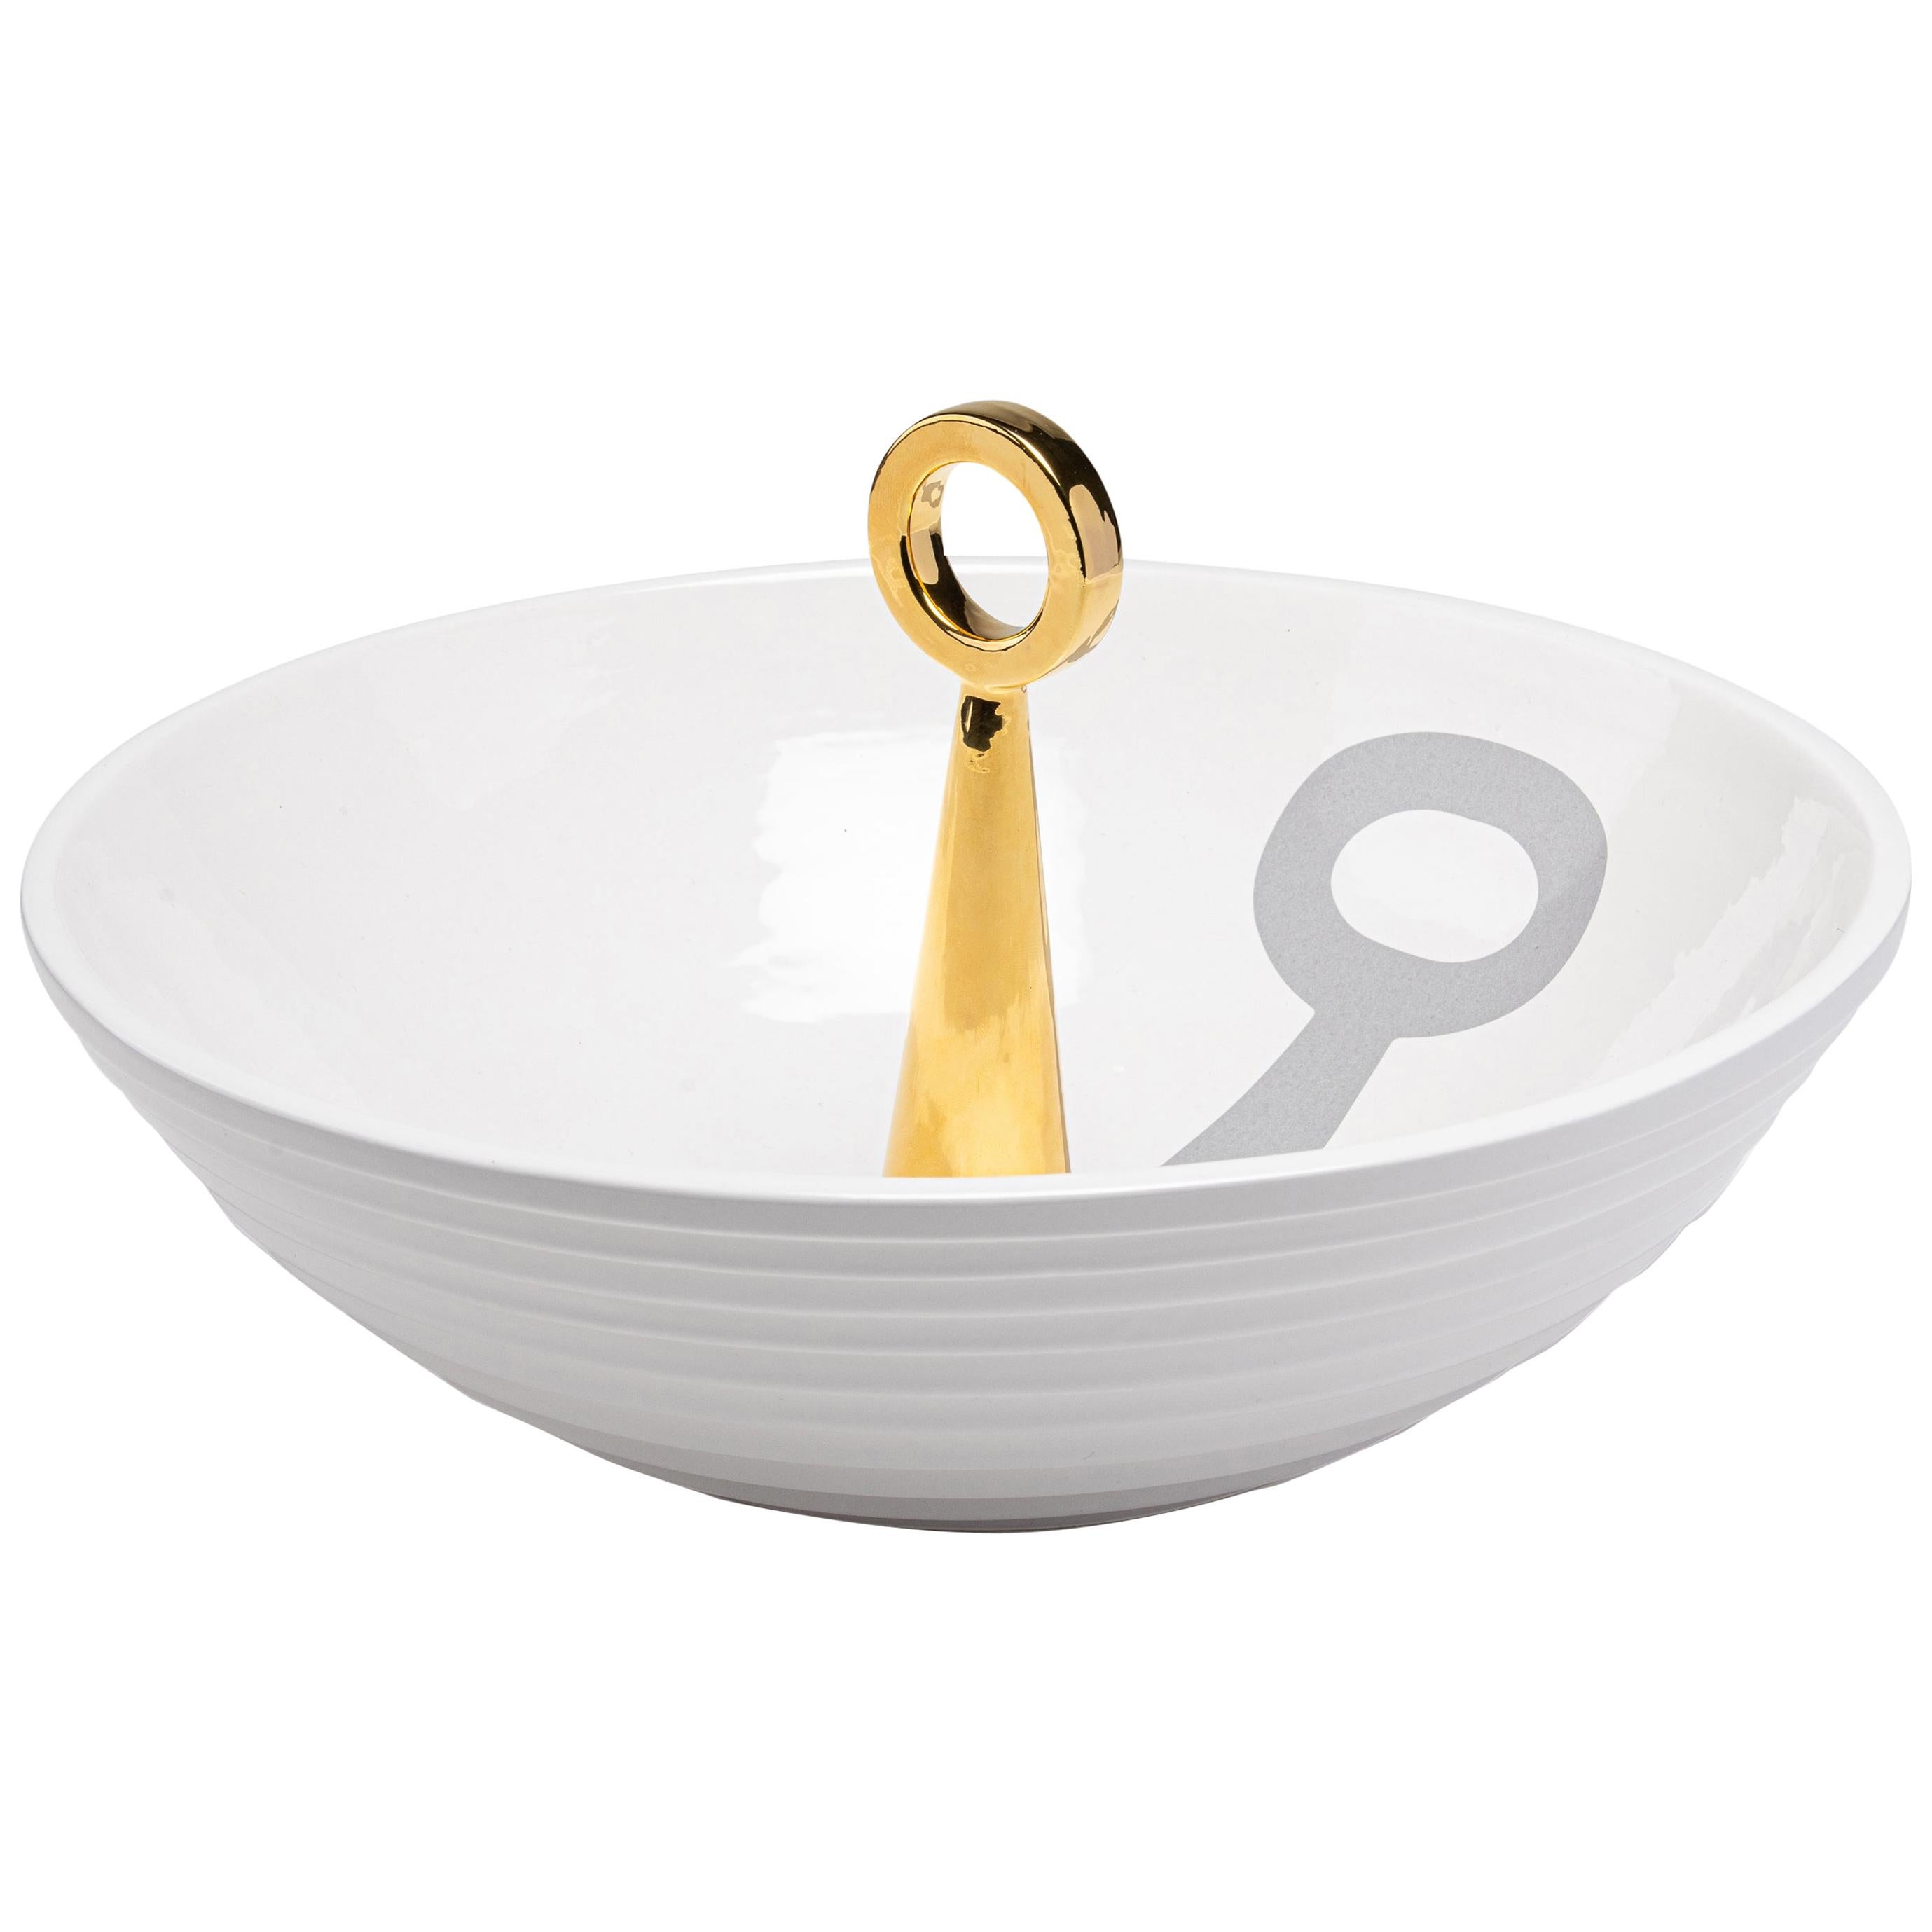 12:30 Uhr: Handgefertigte Schale aus weißer Keramik mit 24-K Golddetails